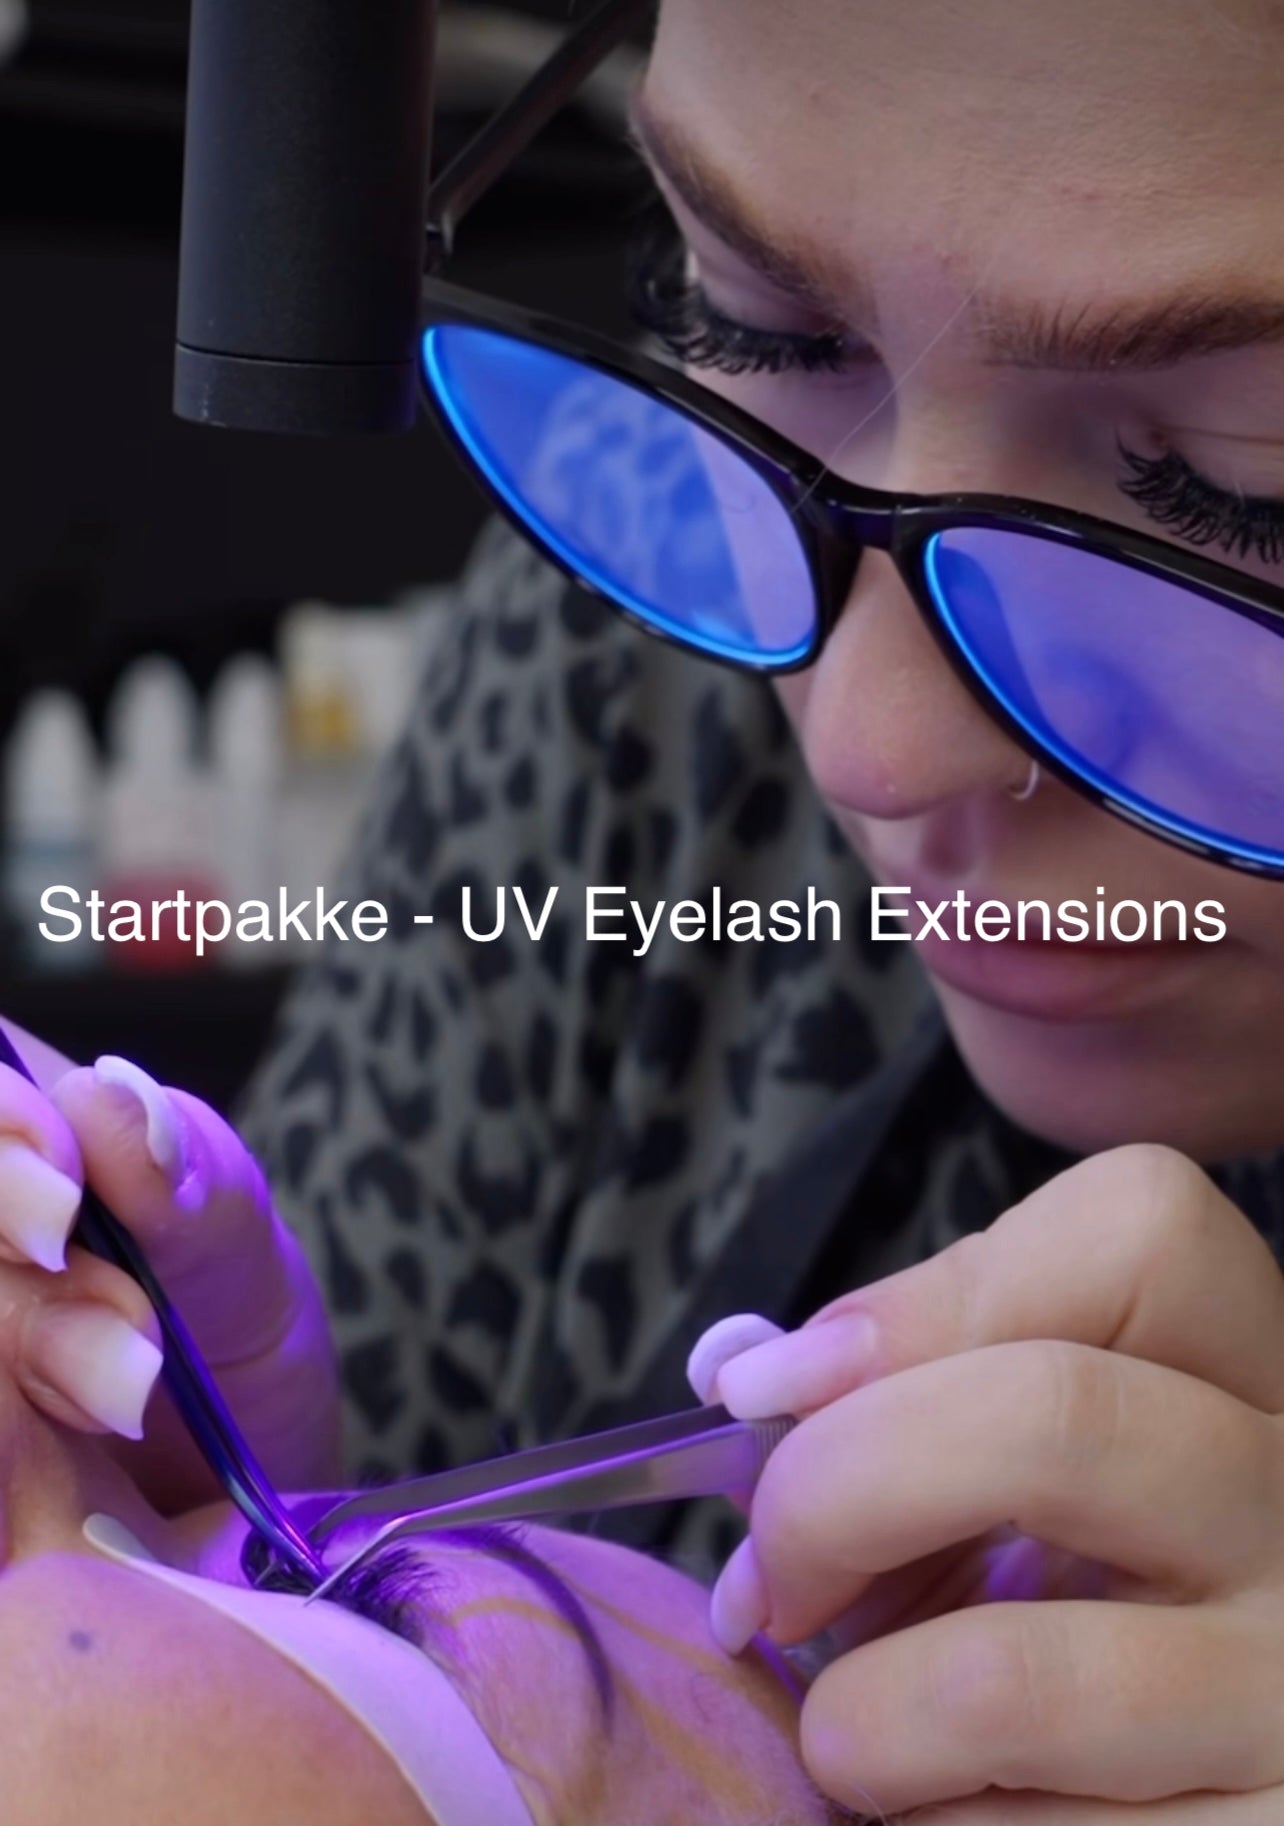 Startpakke - UV Eyelash Extensions